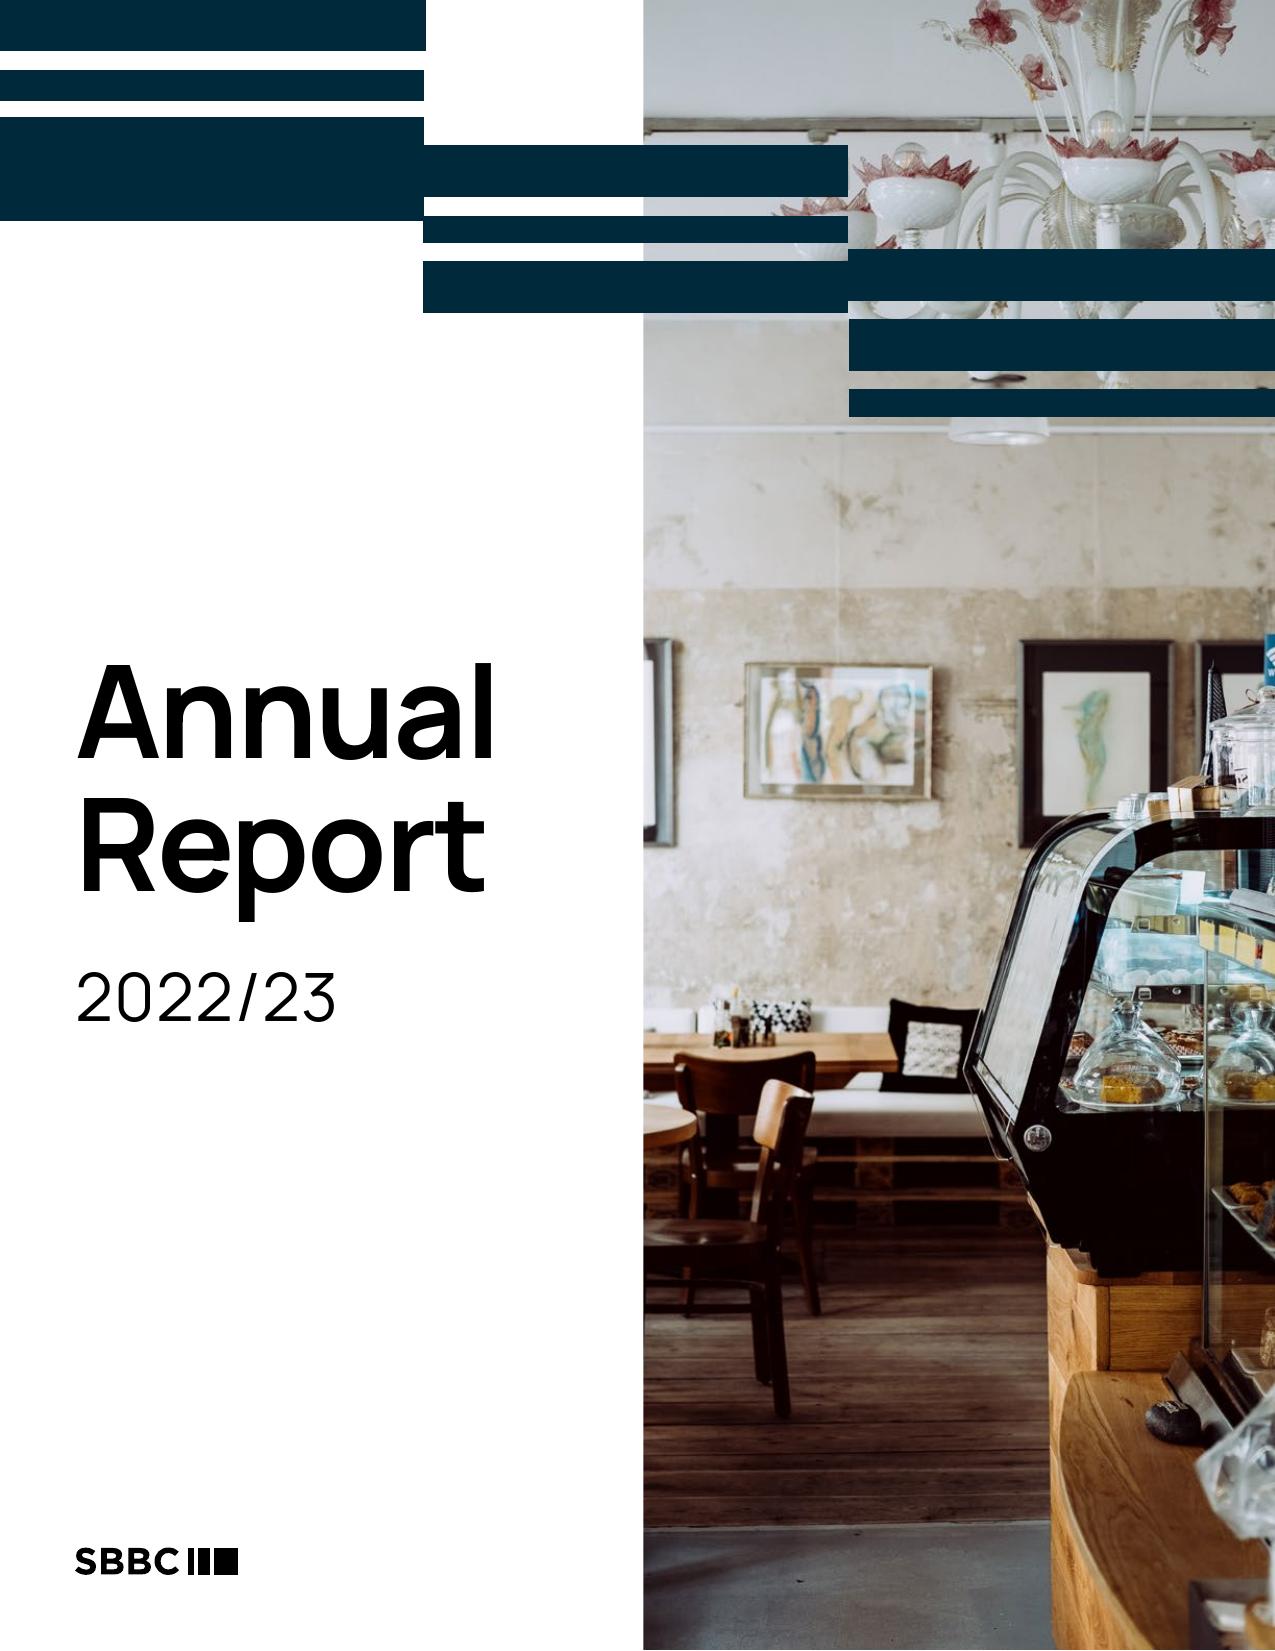 BILL 2023 Annual Report